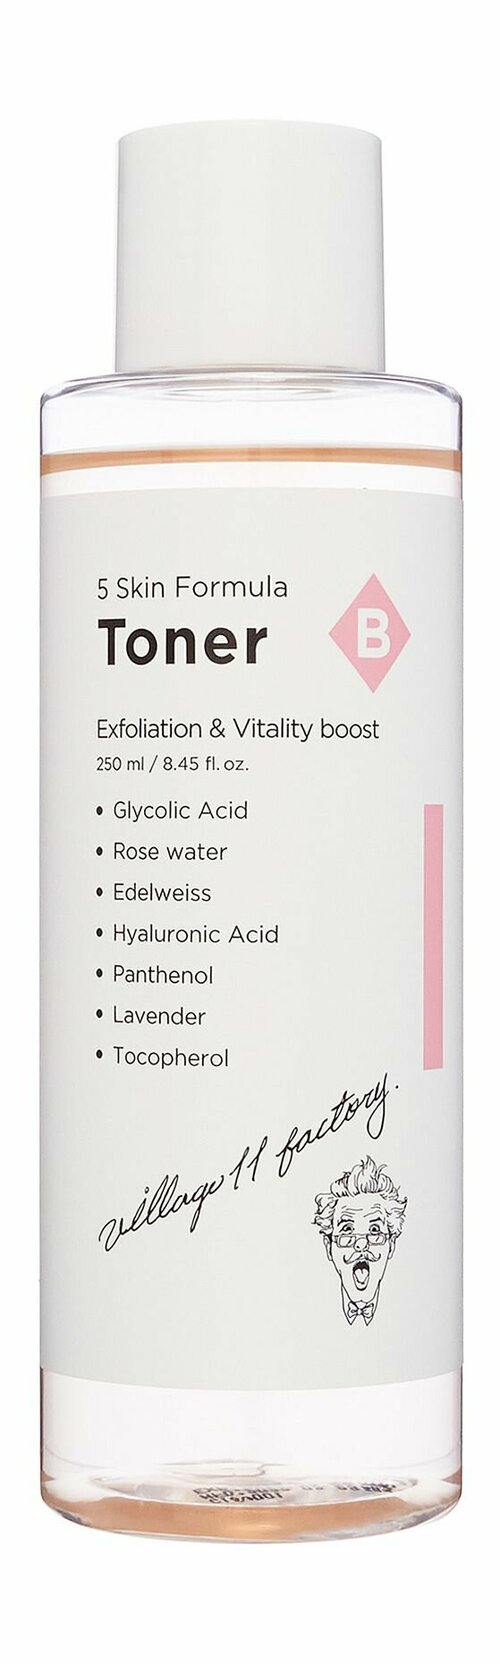 Увлажняющий тонер для лица с витаминами и гликолевой кислотой / Village 11 Factory B Skin Formula Toner